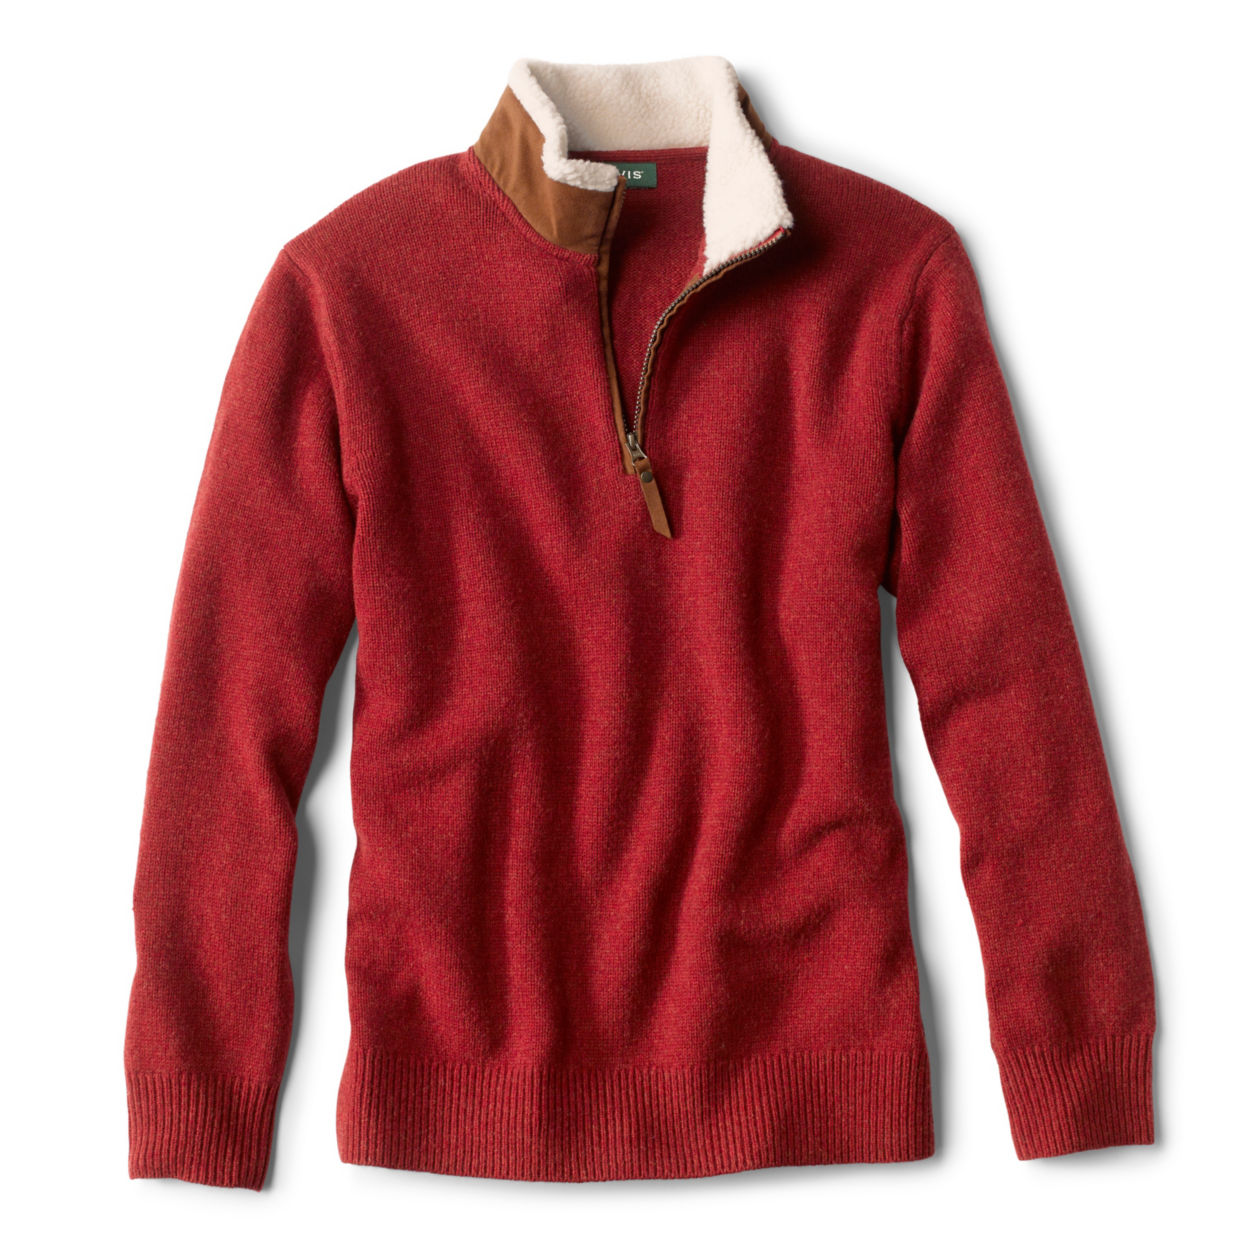 Stowe Quarter-Zip Sweater